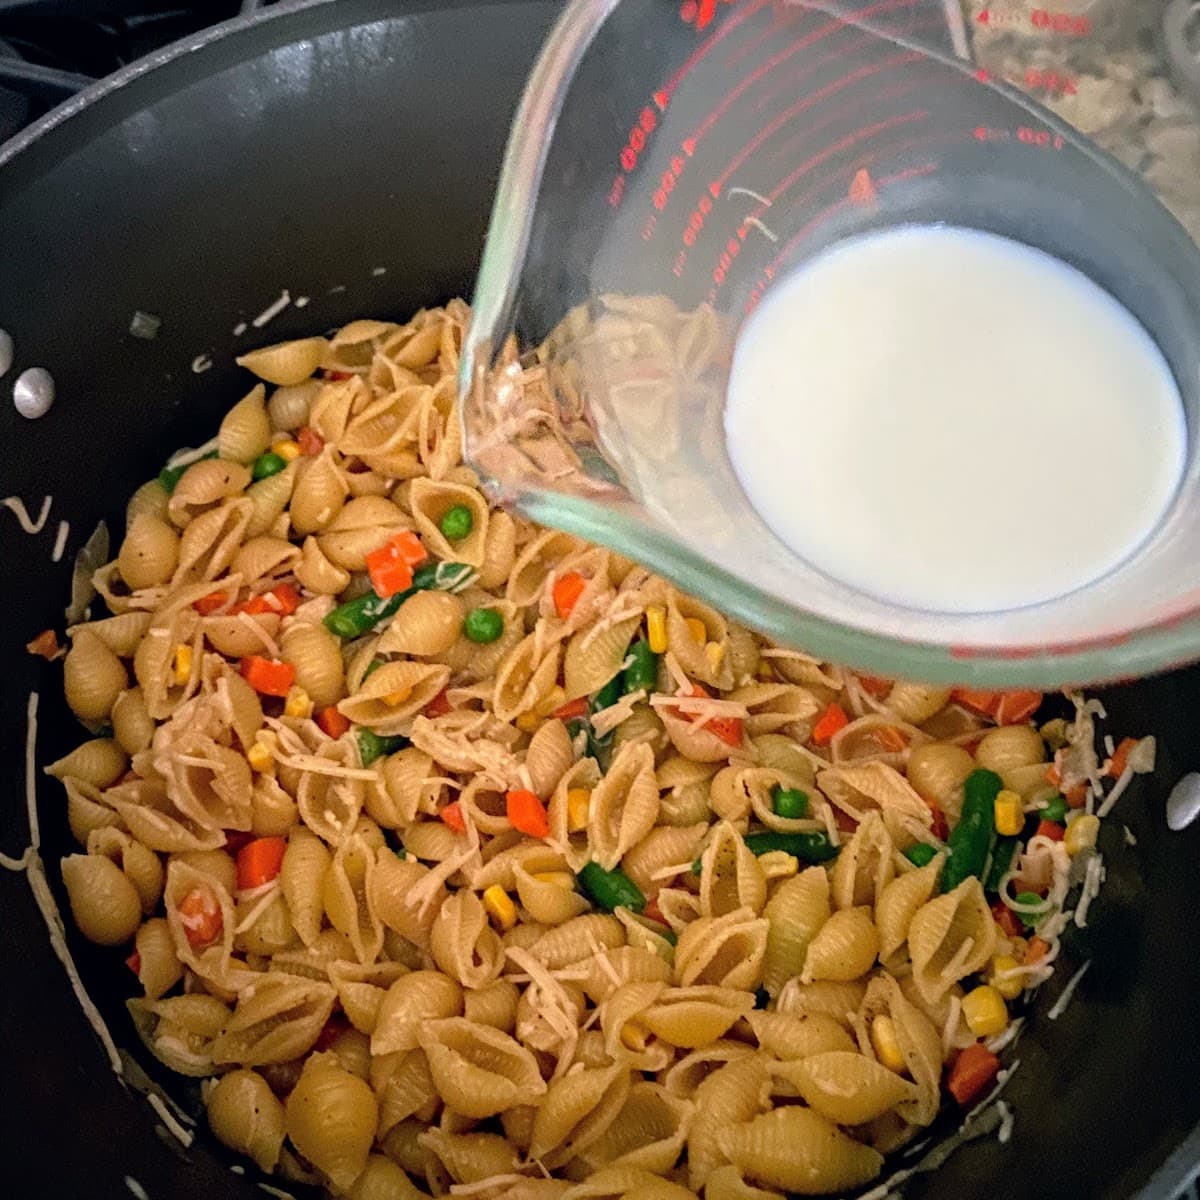 adding milk to pasta